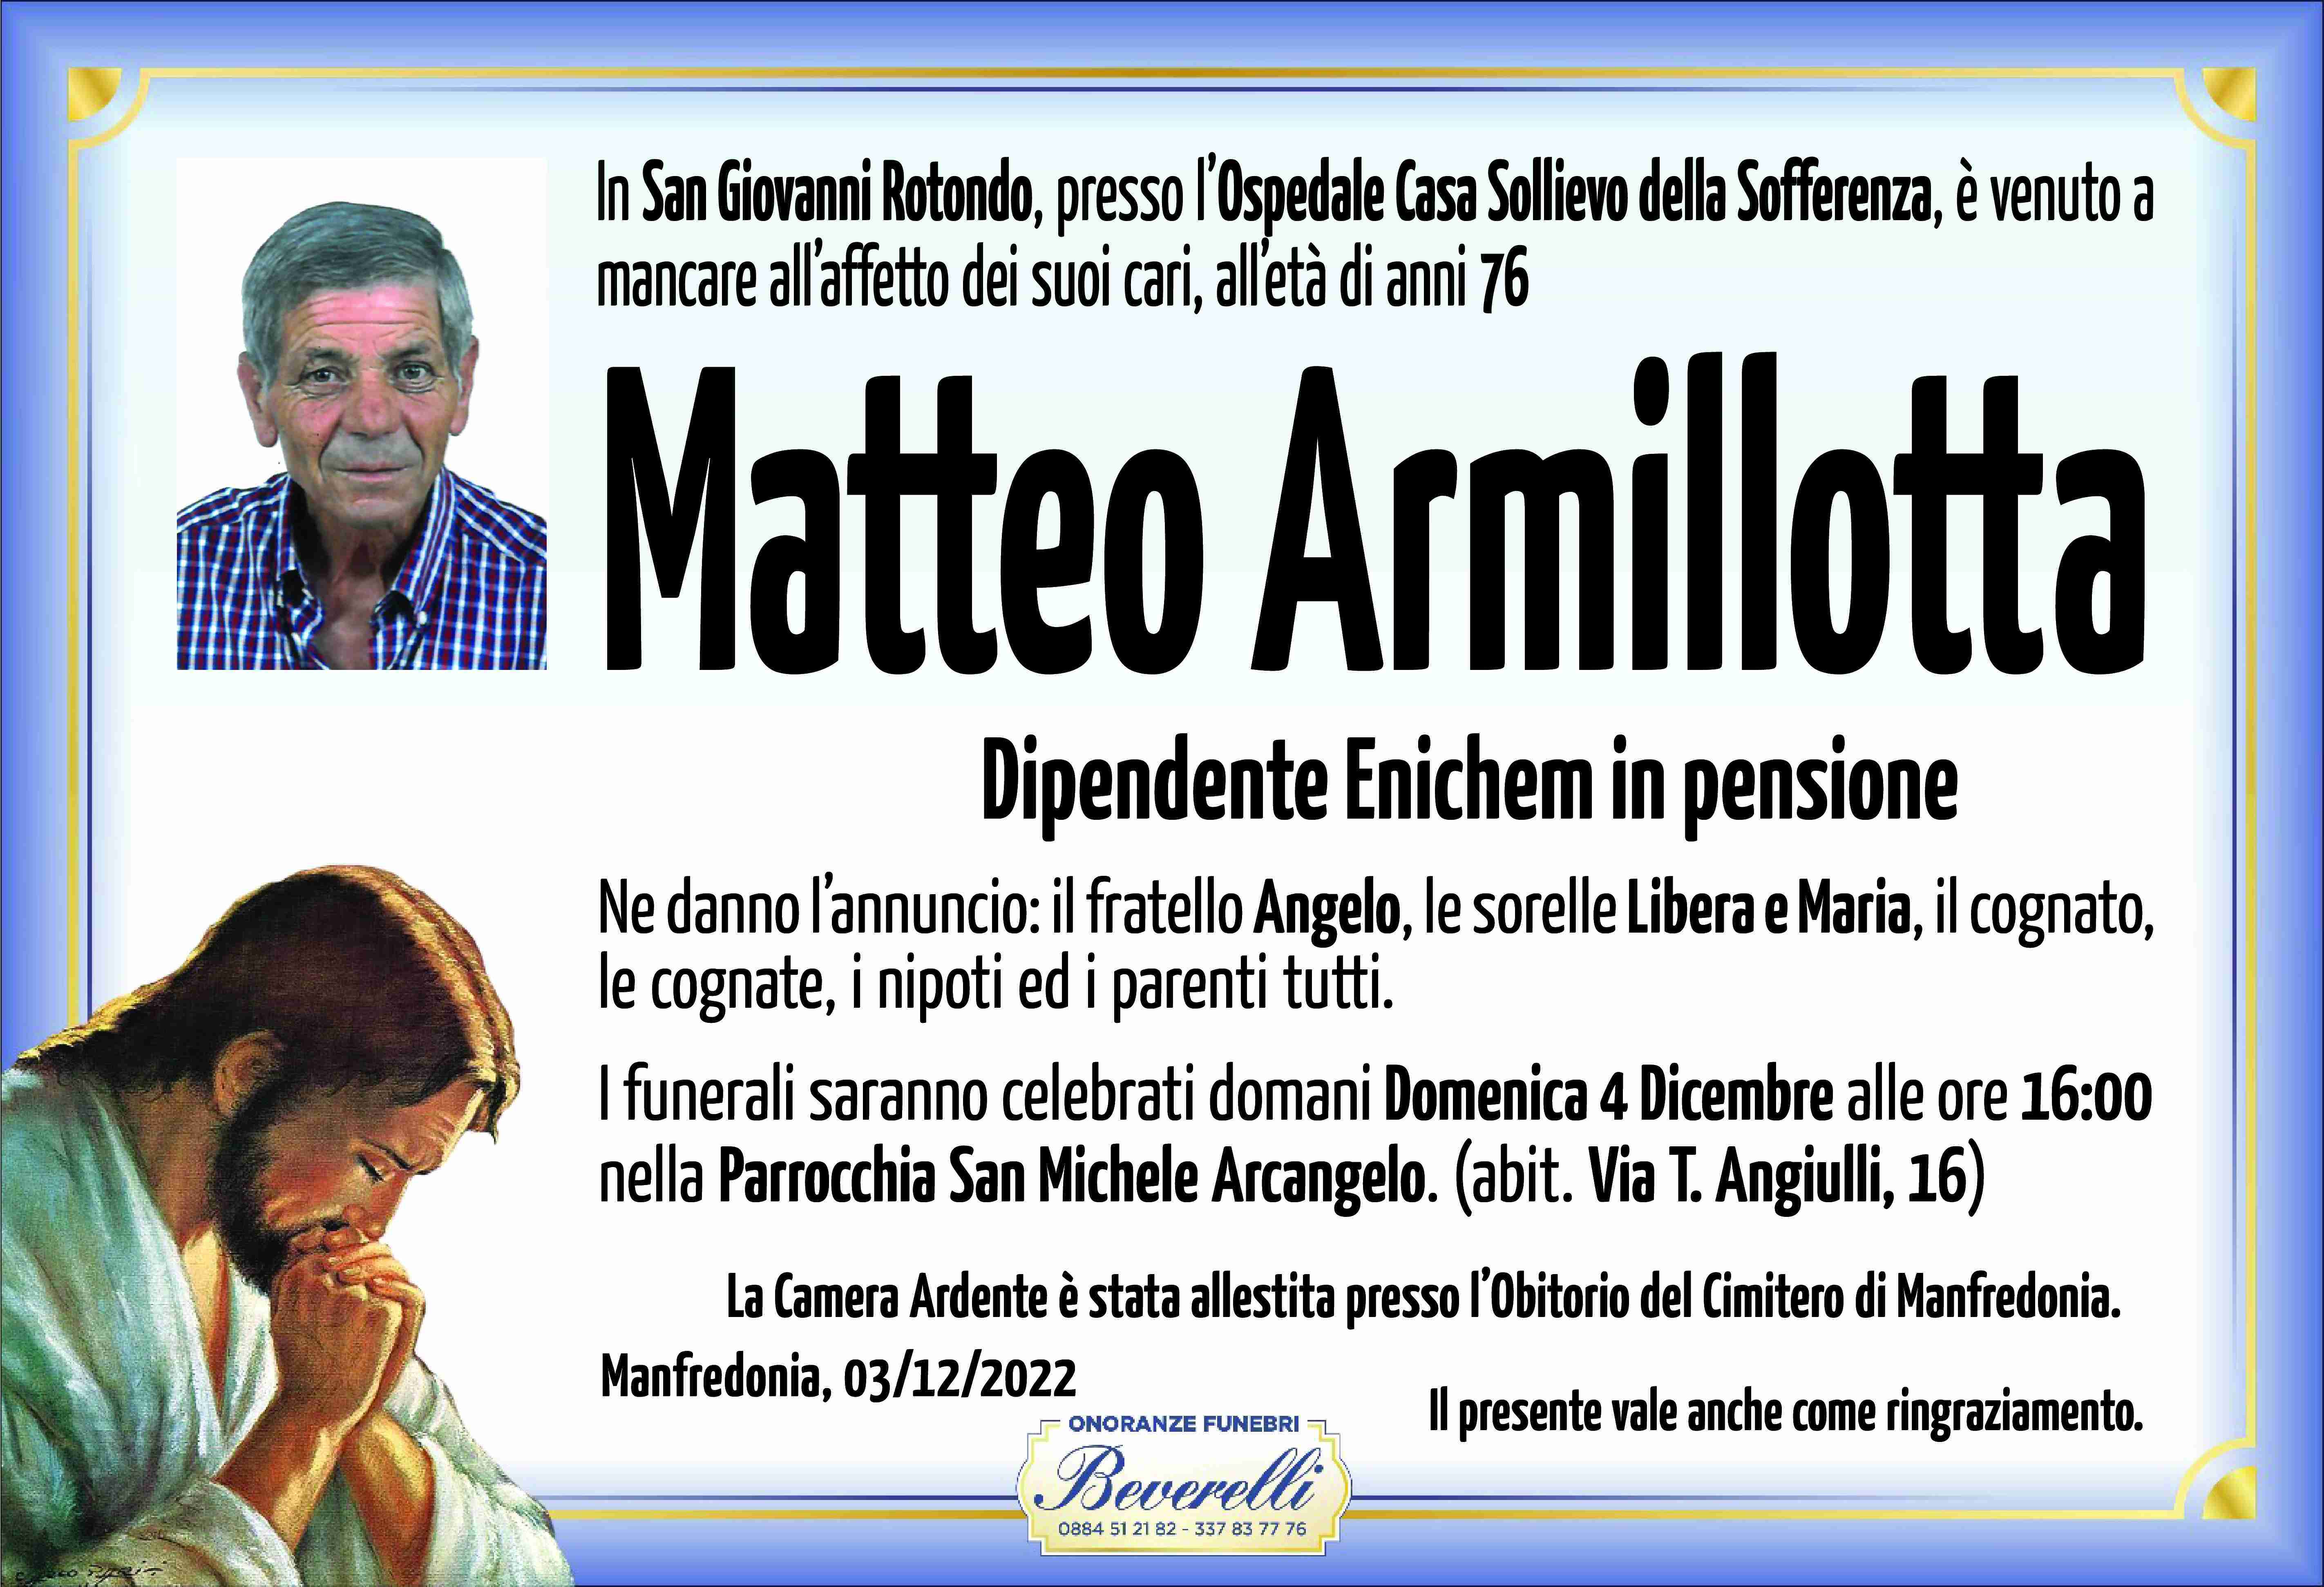 Matteo Armillotta